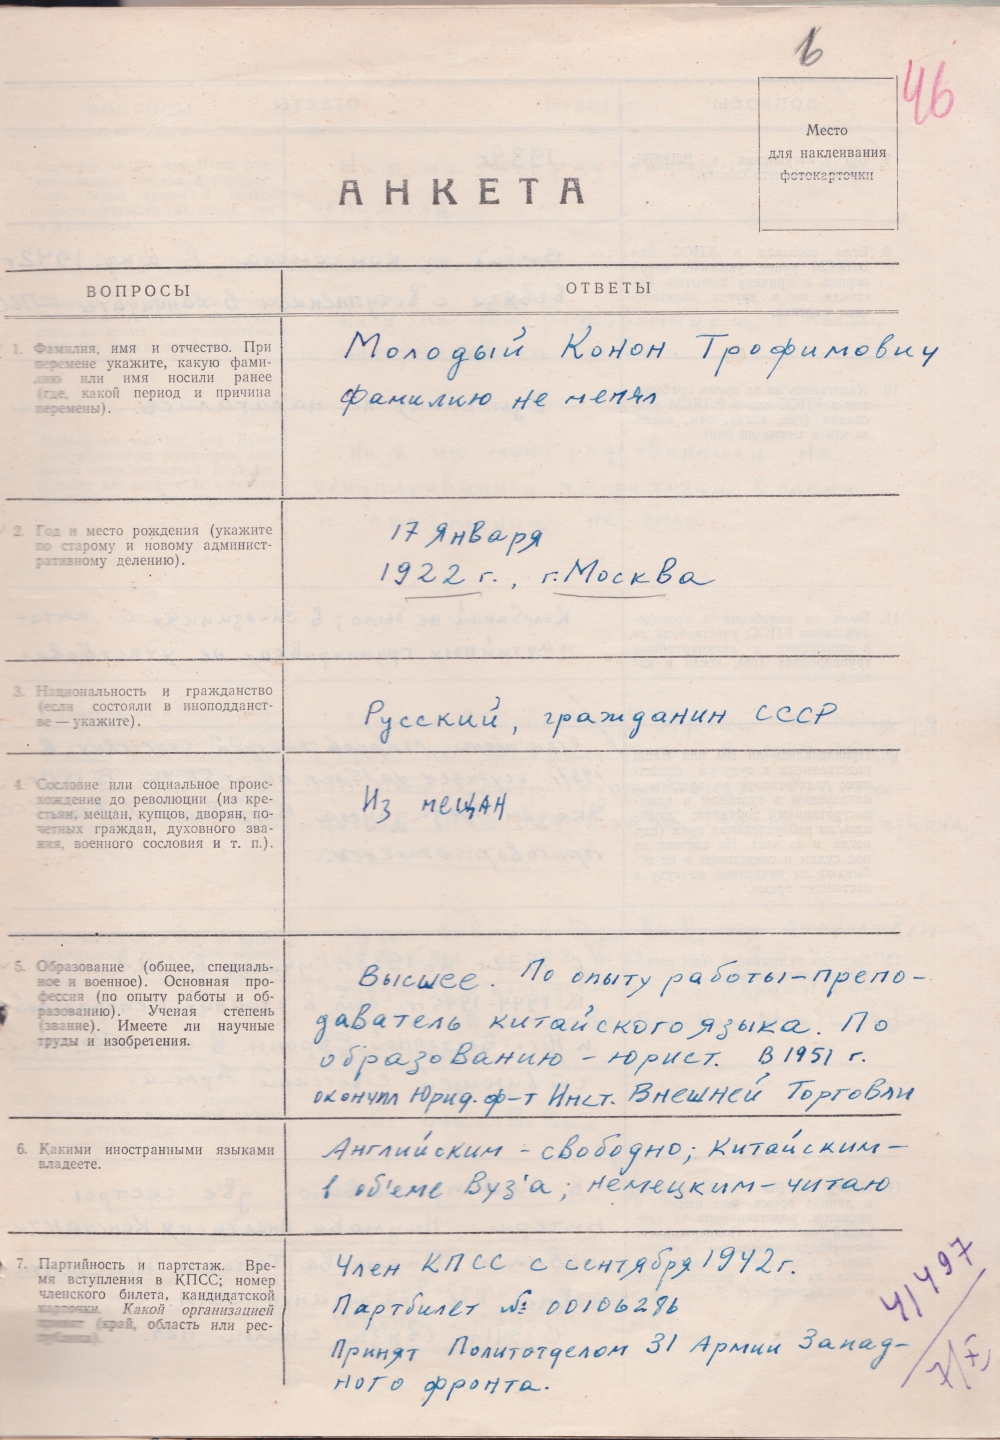 Анкета, заполненная собственноручно Кононом Молодым, хранится в омском архиве УФСБ.